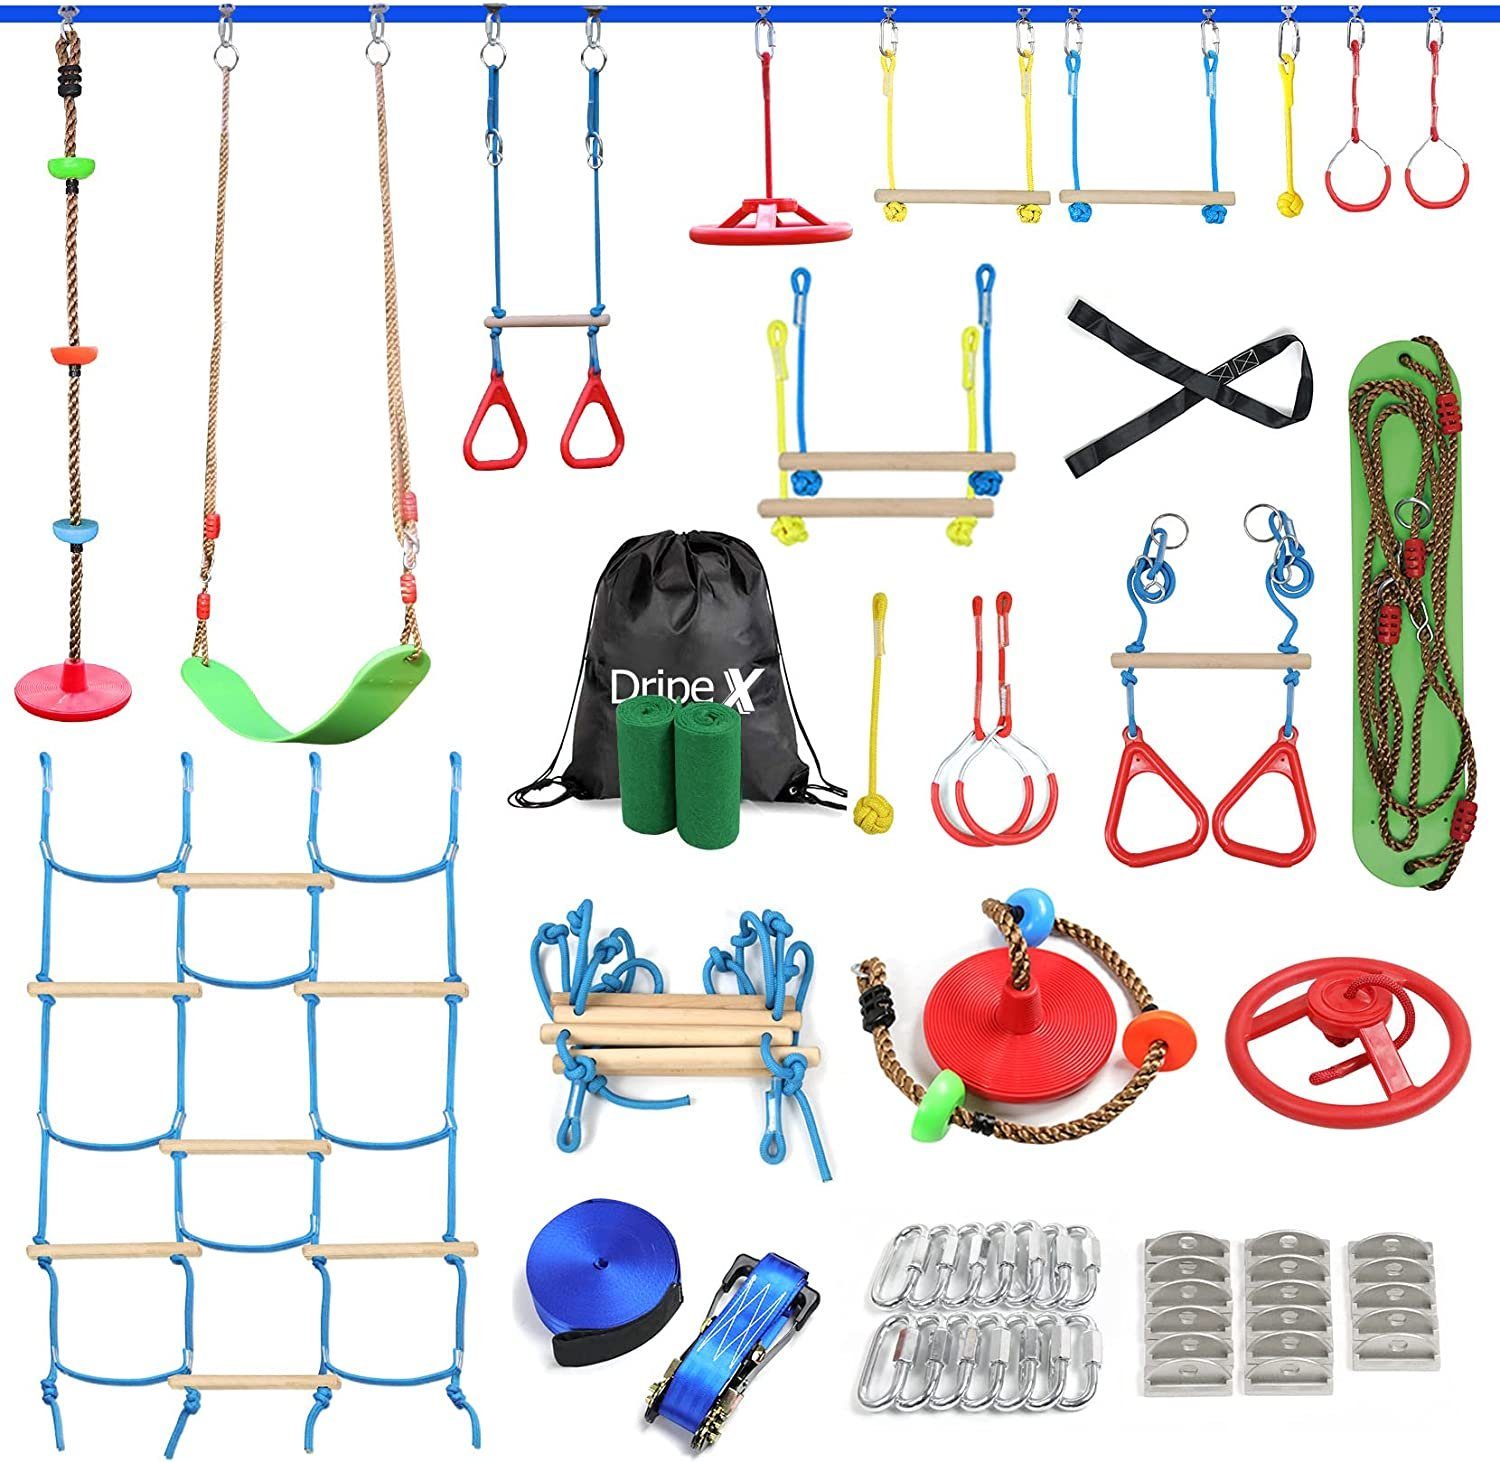 Dripex Slackline Hindernisparcours-Kit für Kinder 18 Meter mit Seilschaukel